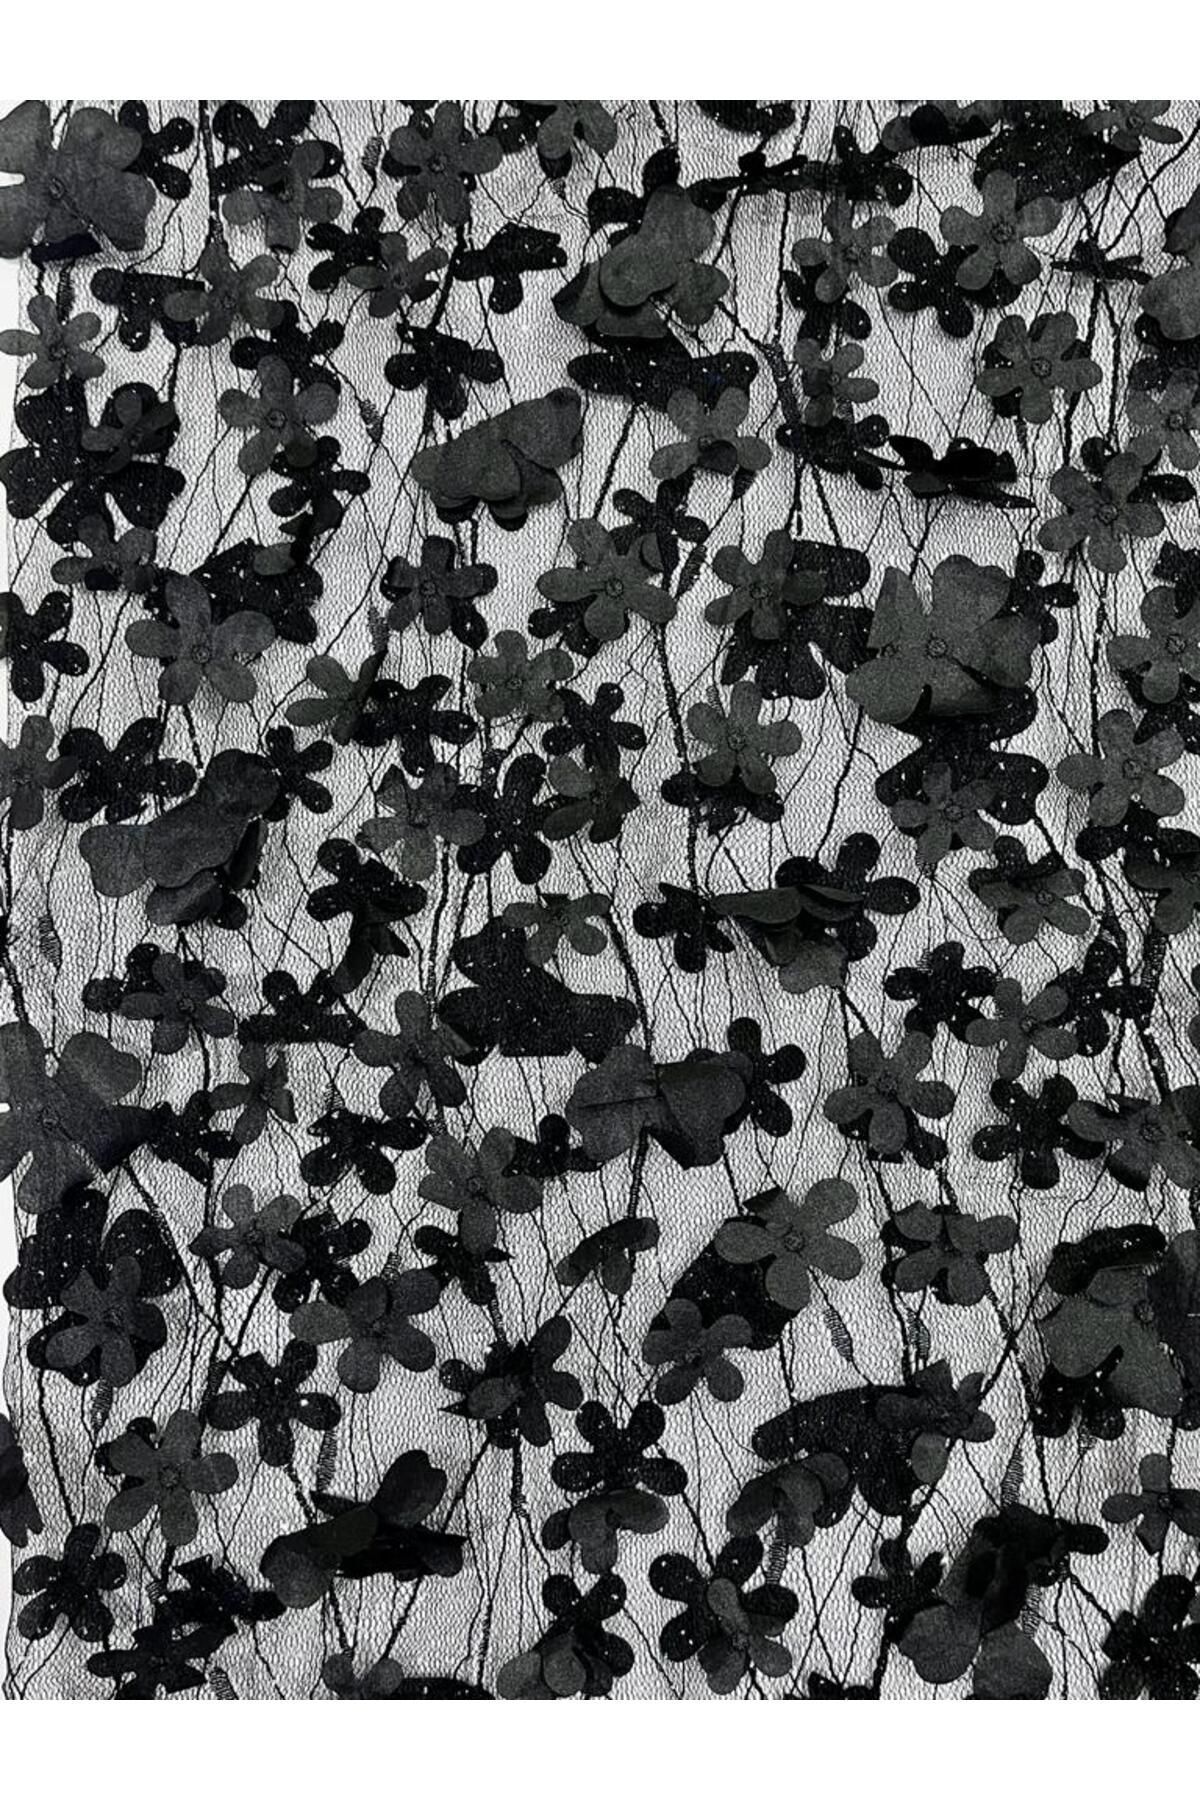 Esterella Kopma Üç Boyutlu Çiçekli Dantel/parıltılı tül Siyah Kumaş (135 cm En)